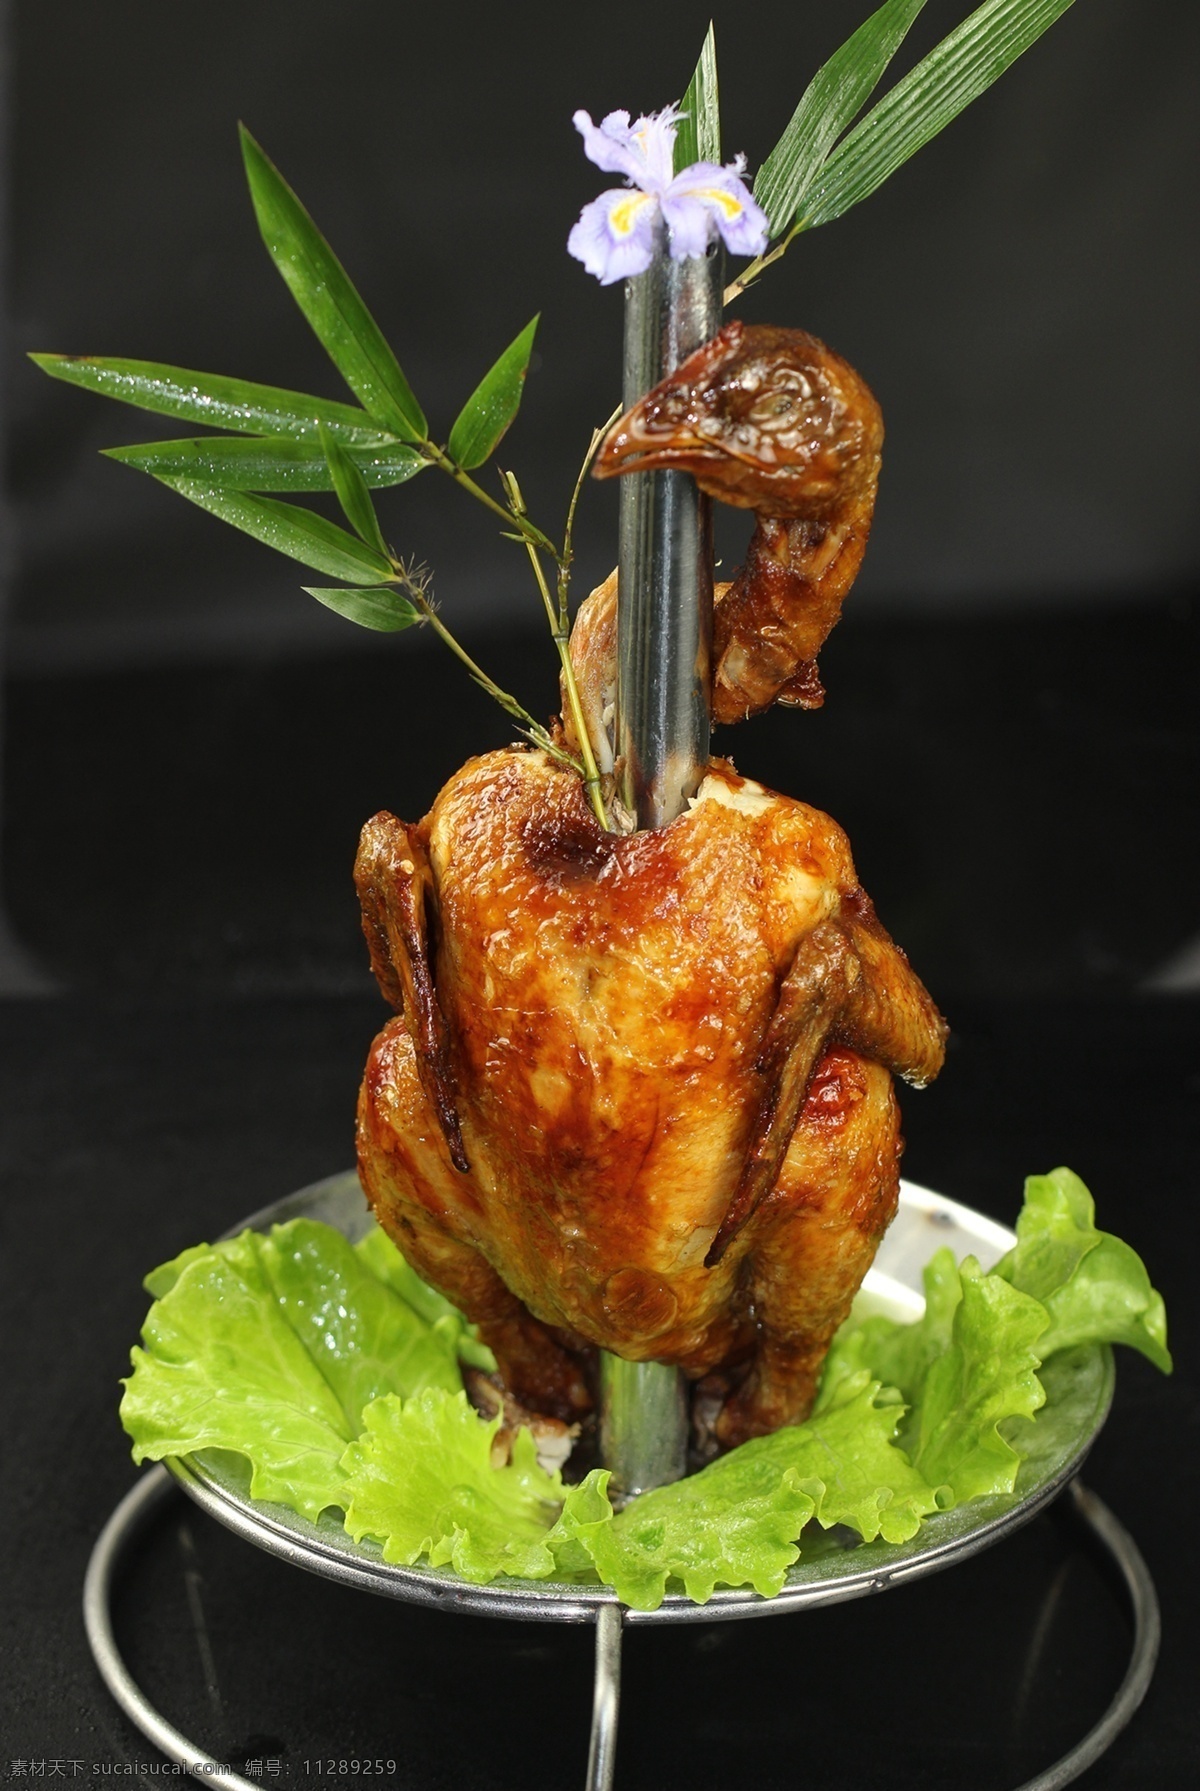 创意钢管鸡 跳钢管舞的鸡 钢管鸡 烤鸡 碳 餐饮美食 传统美食